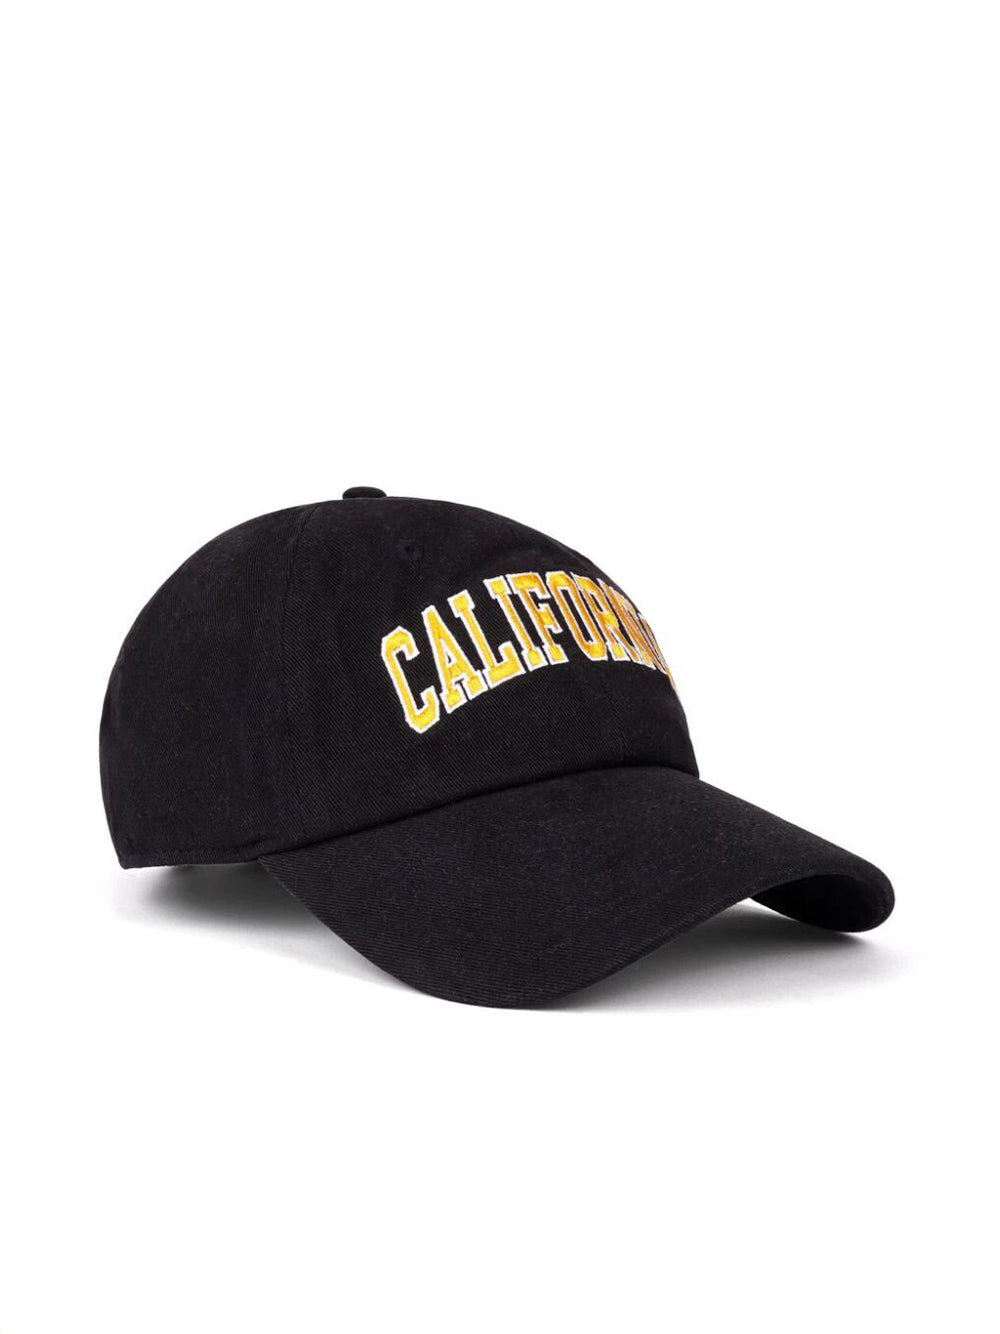 California cap